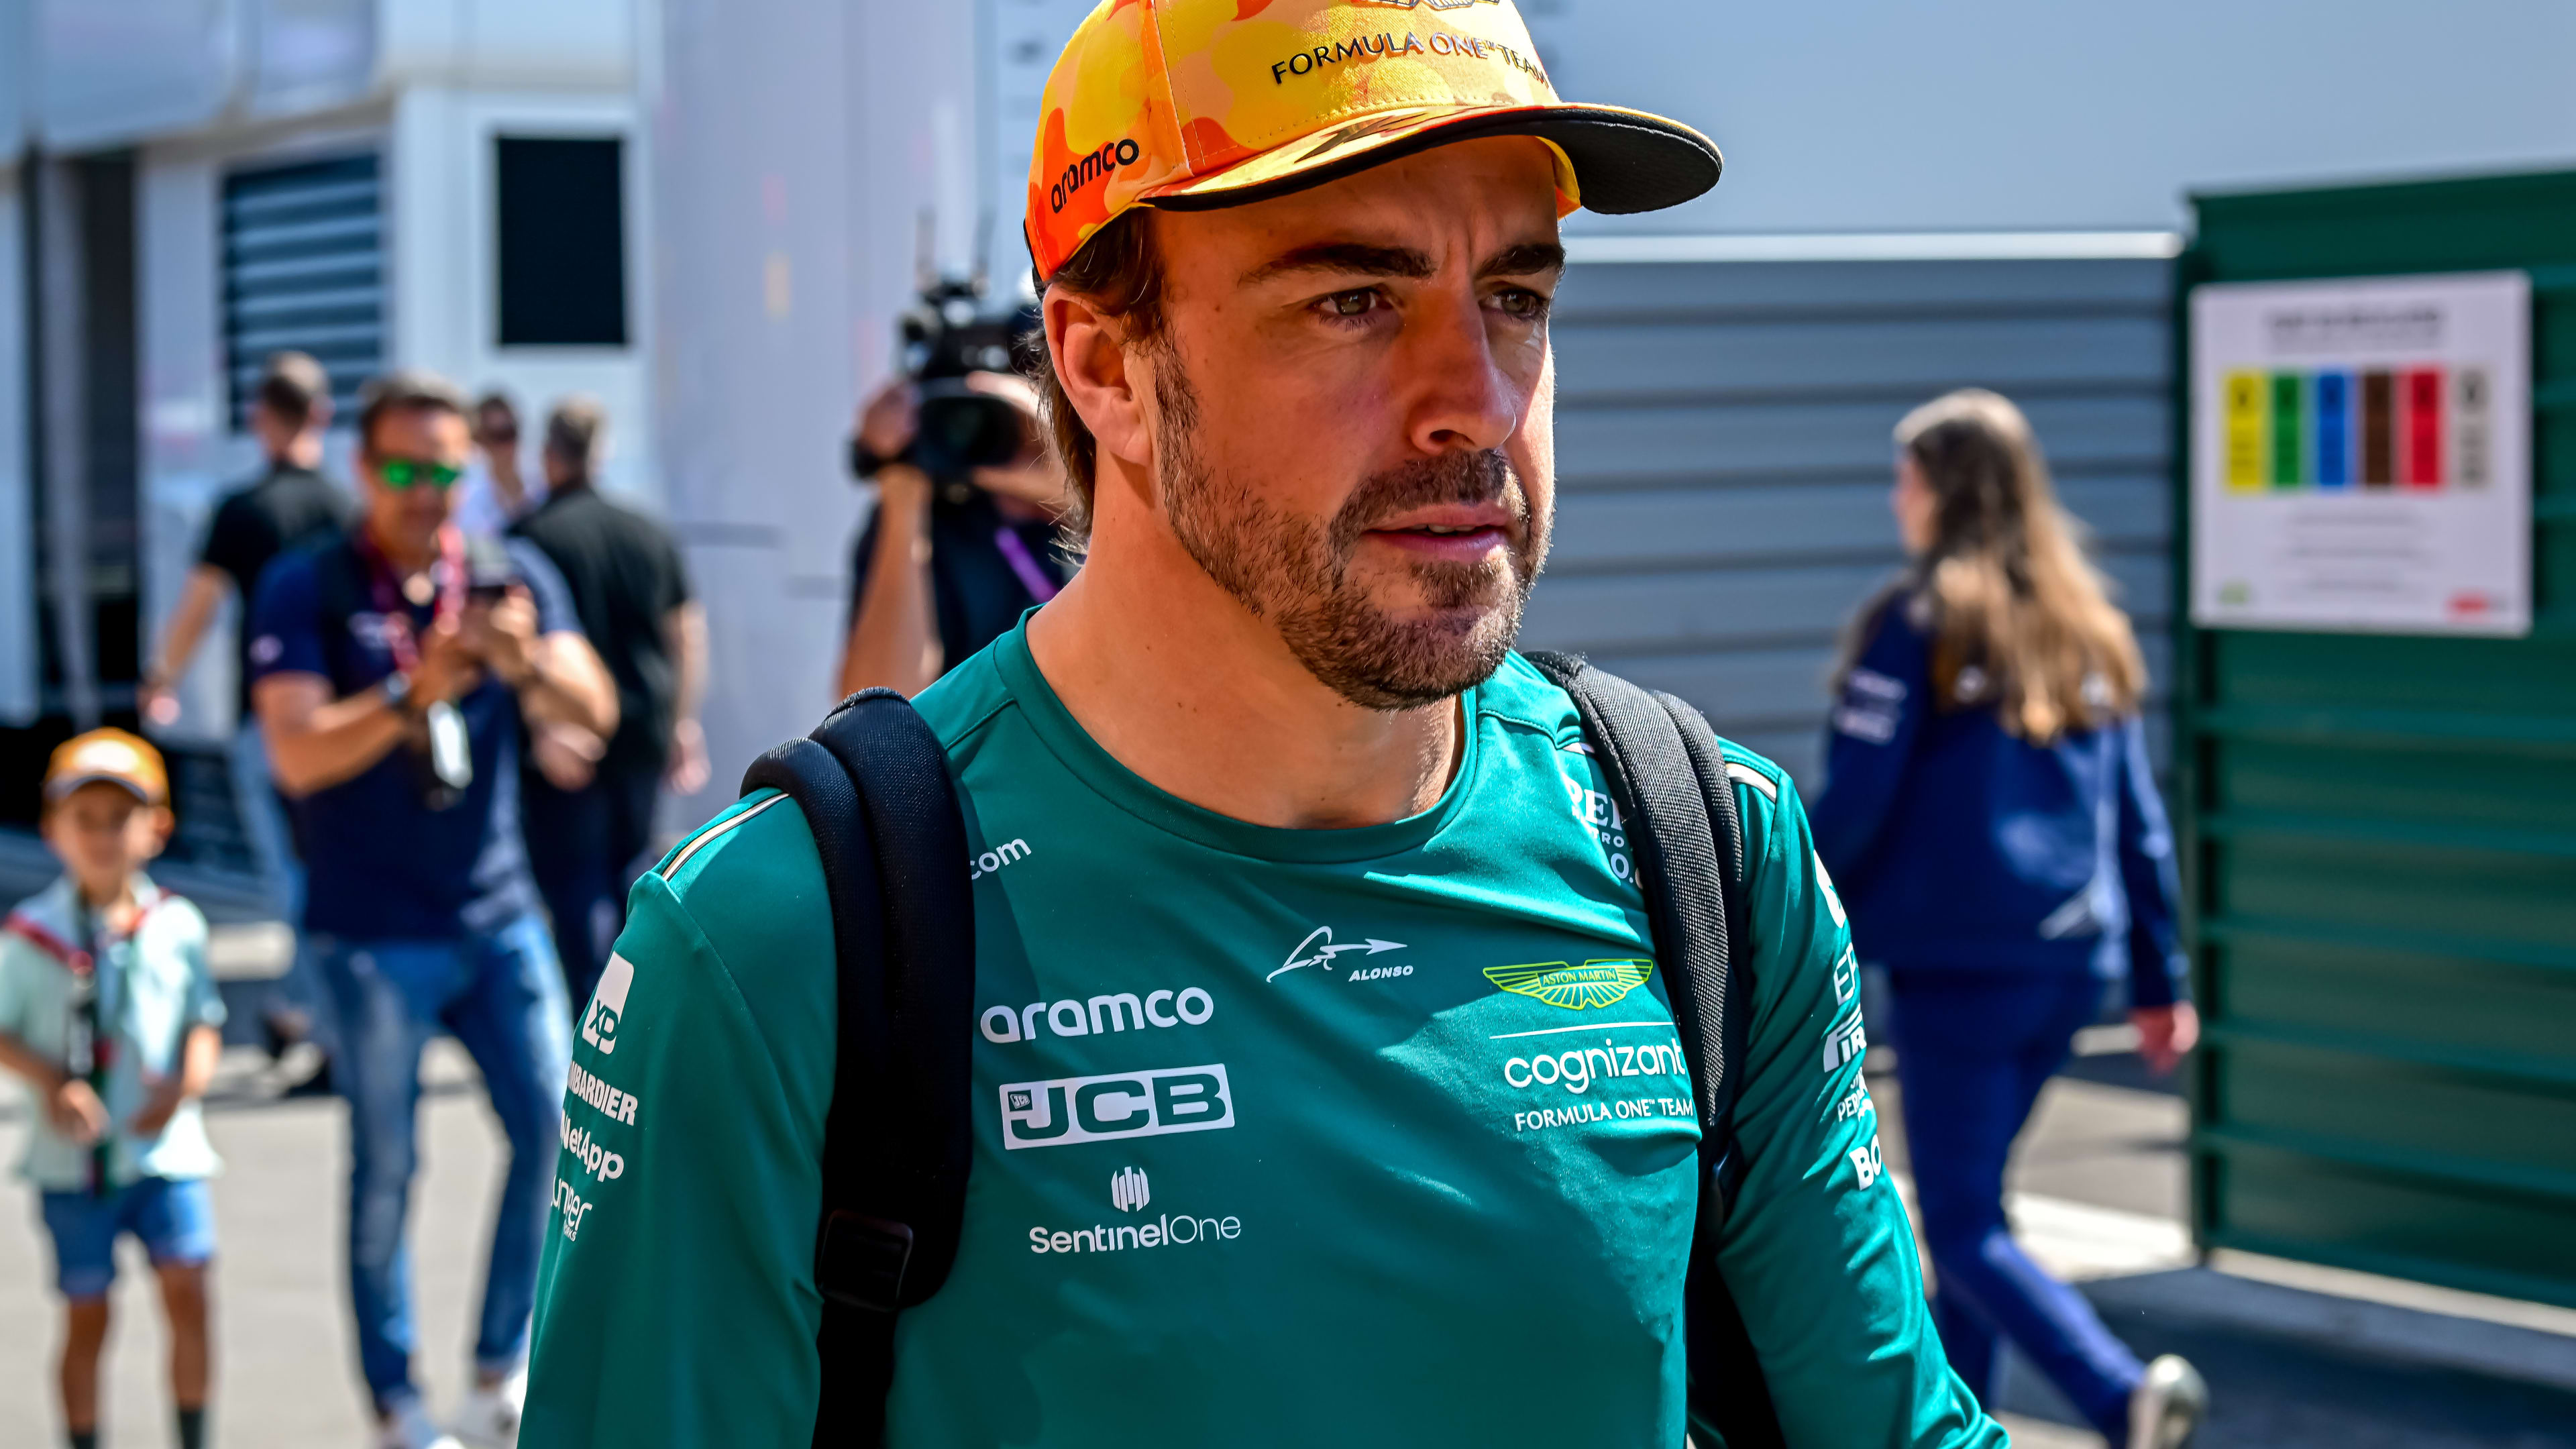 Fernando Alonso - F1 Driver for Aston Martin